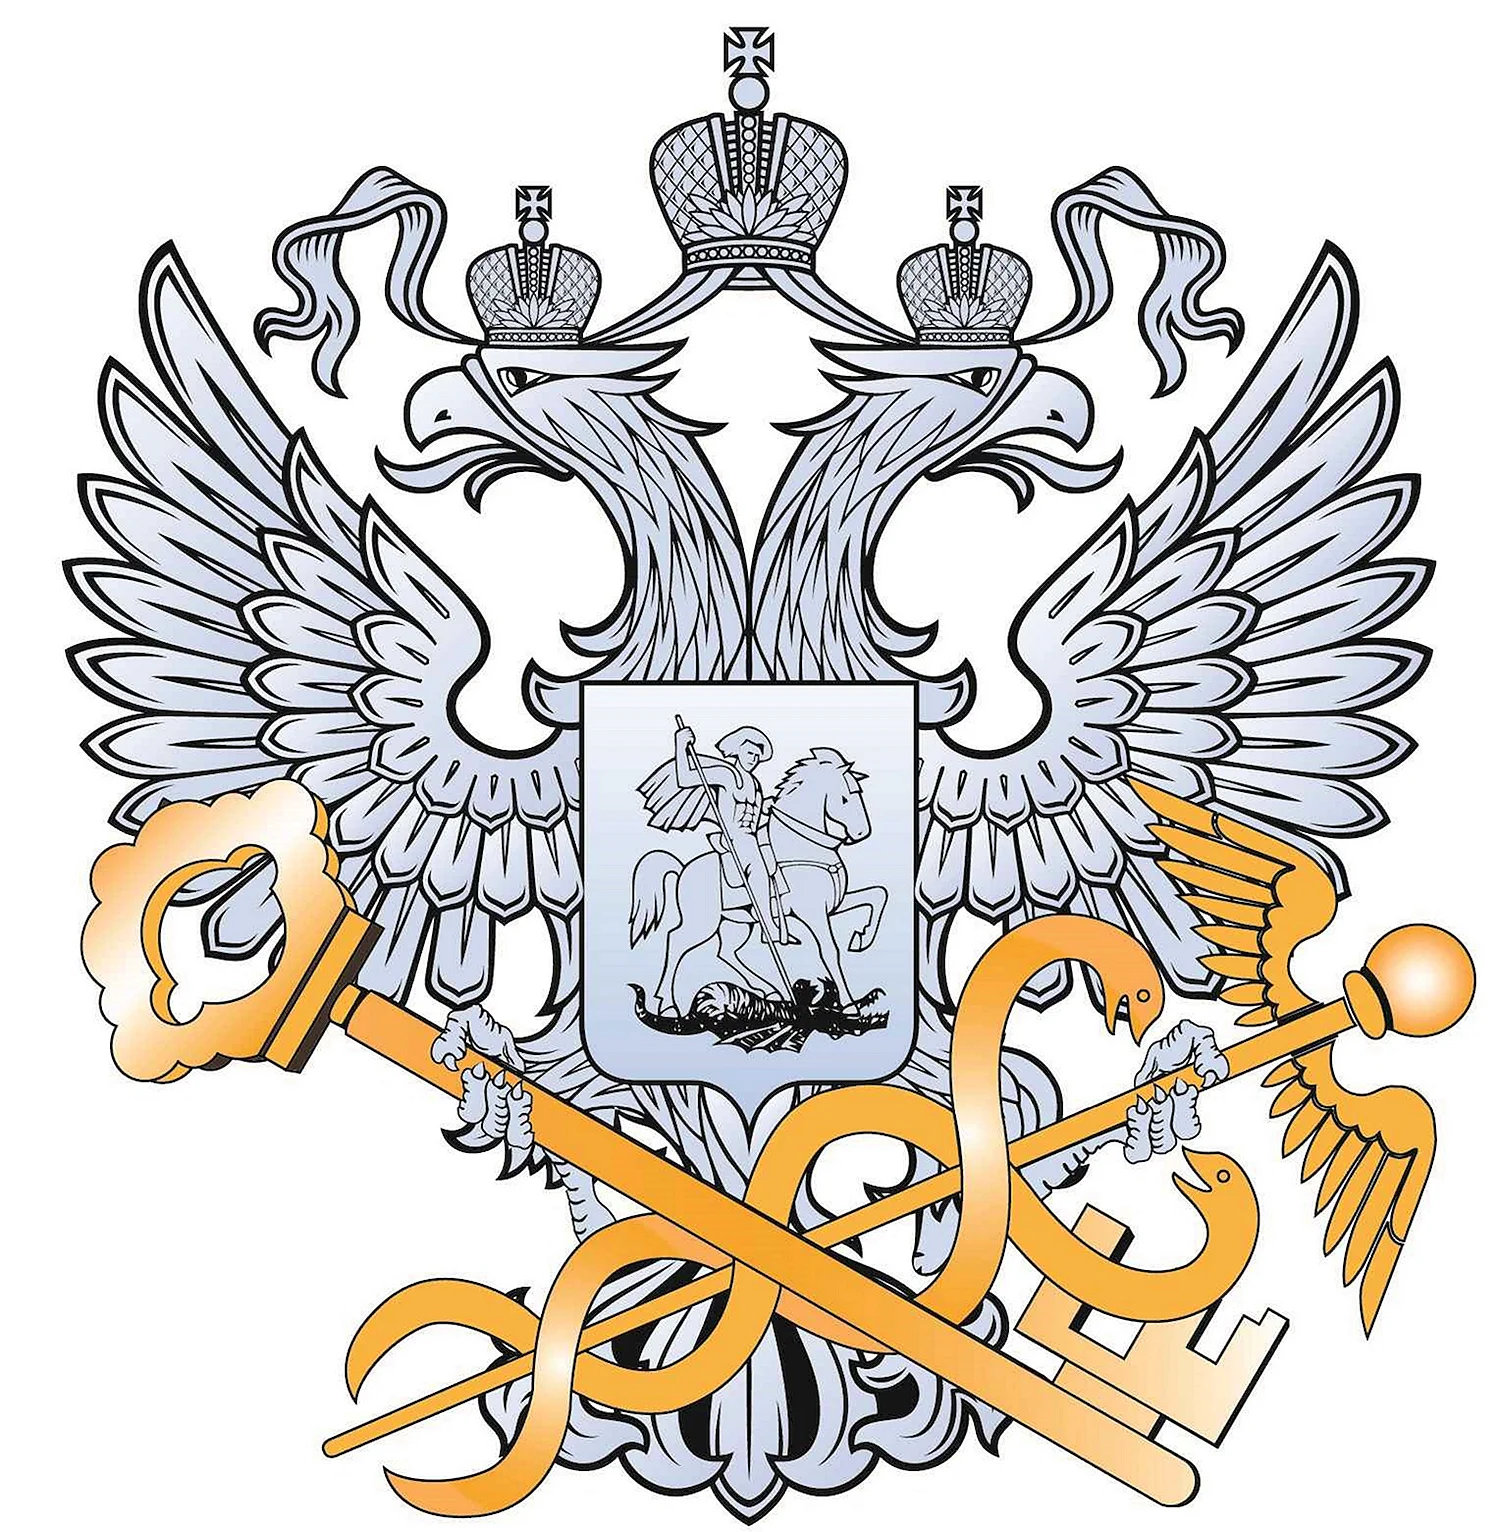 Герб Федеральной налоговой службы России